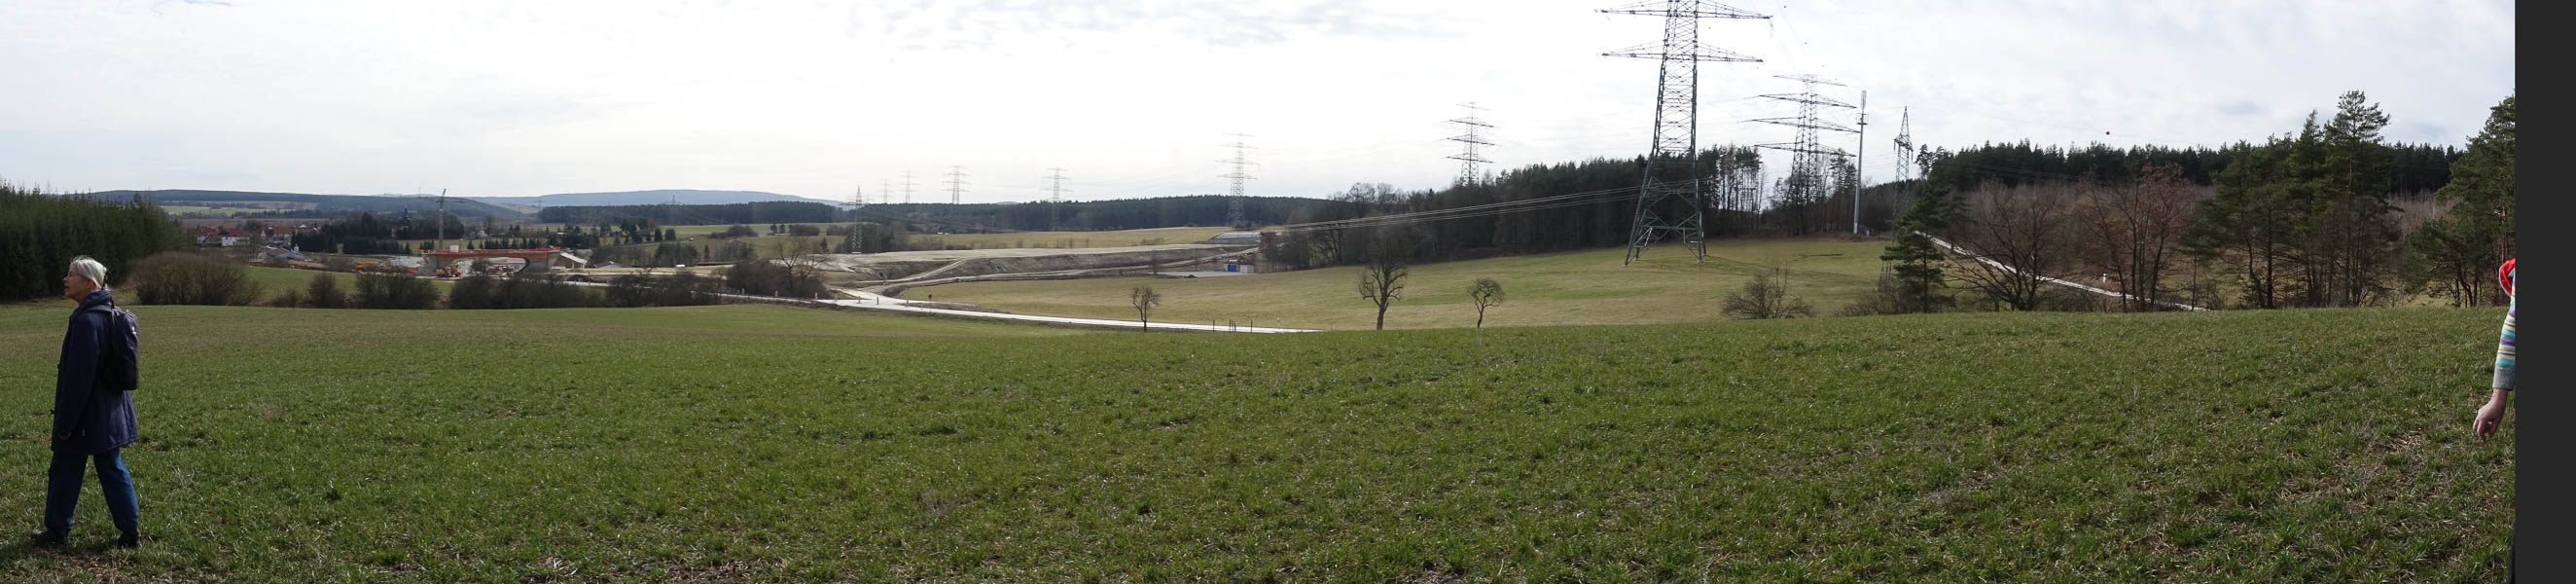 das Problem entsteht erst noch durch die Anbindung des Rudolstadt-Saalfelder Raumes an die A71 neben Traszdorf!